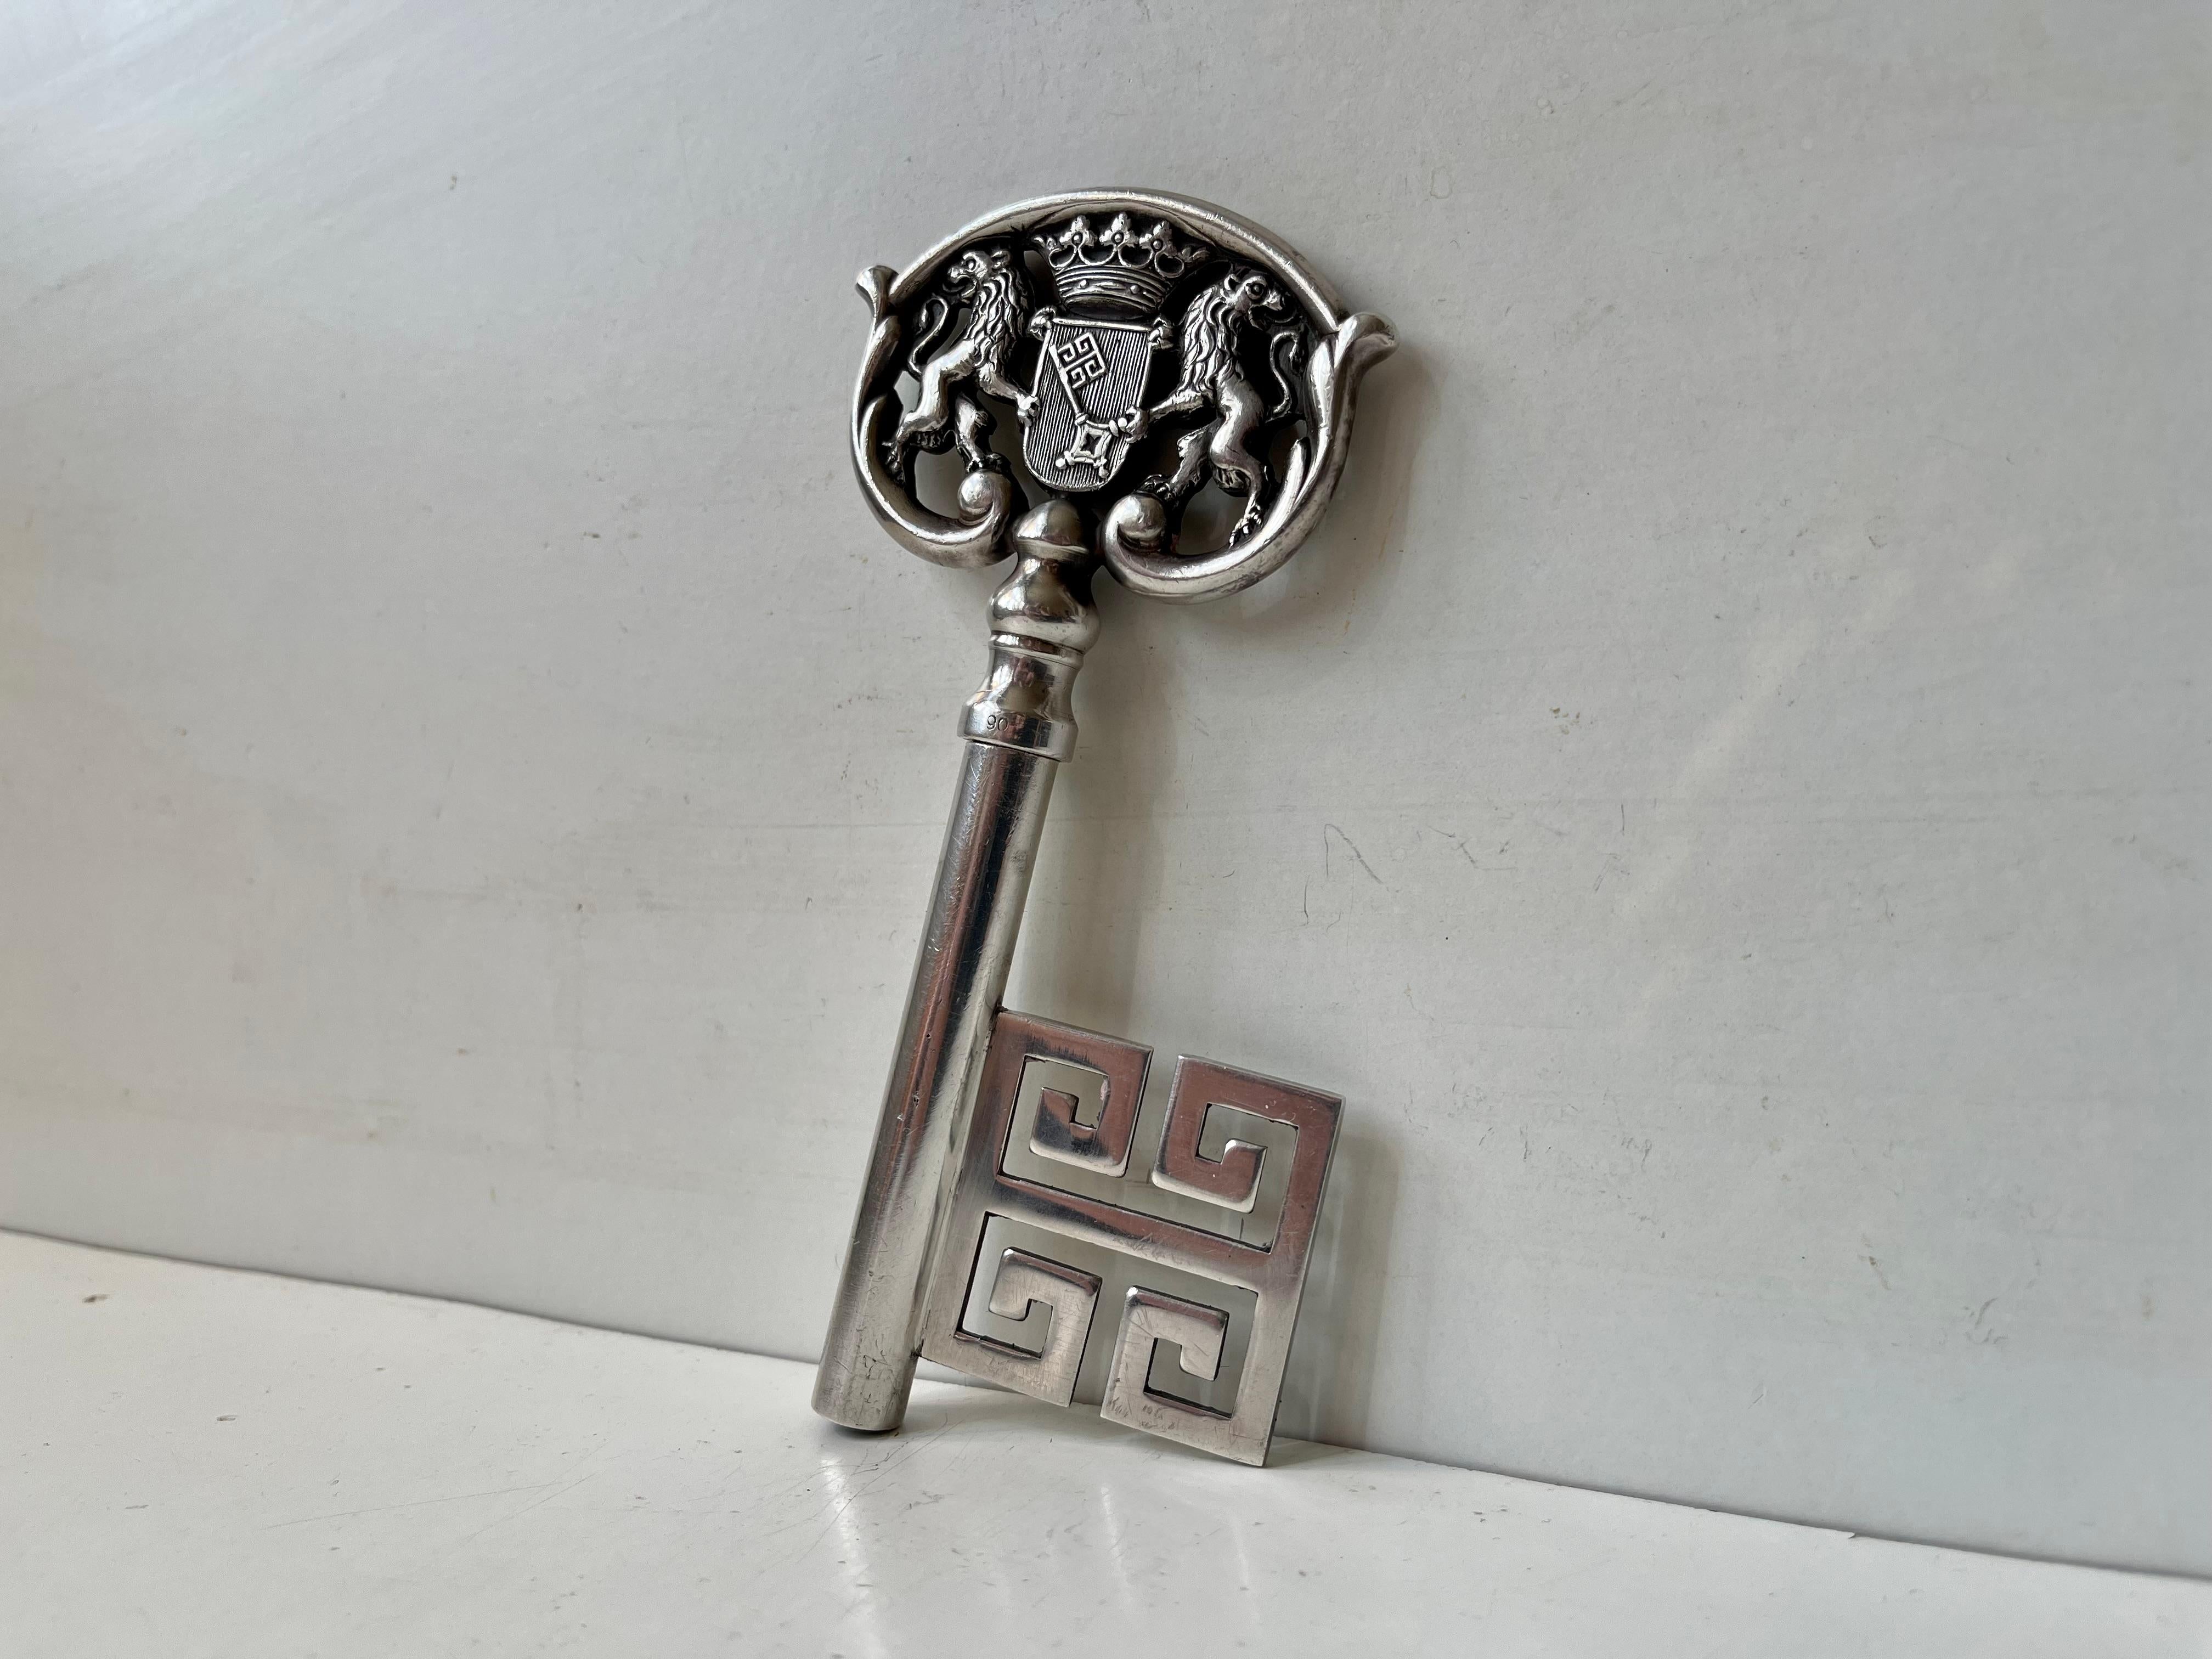 Vintage Fortement argenté (poinçon de 90 microns), très élégant tire-bouchon-clef de cave représentant les armoiries de Brême avec le Bremer Schlüssel (clef de Brême). Il est originaire de la ville allemande de Brême et est également connu sous le